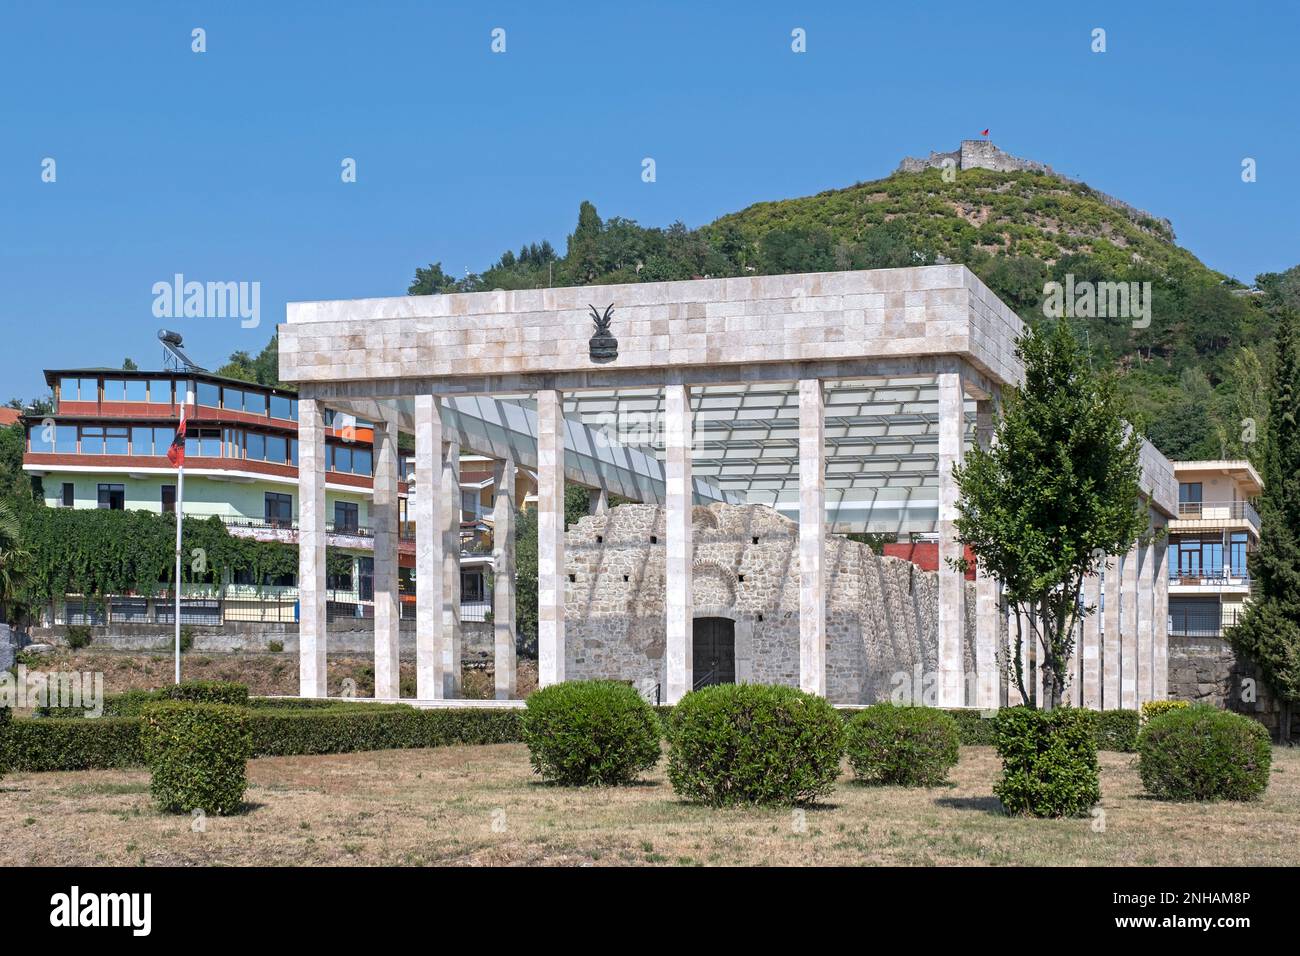 Mausoleum / Denkmal für Skanderbeg, albanischer feudalord und oberster Militärbefehlshaber der Liga von Lezhë und Schloss Lezhe auf dem Hügel, Albanien Stockfoto